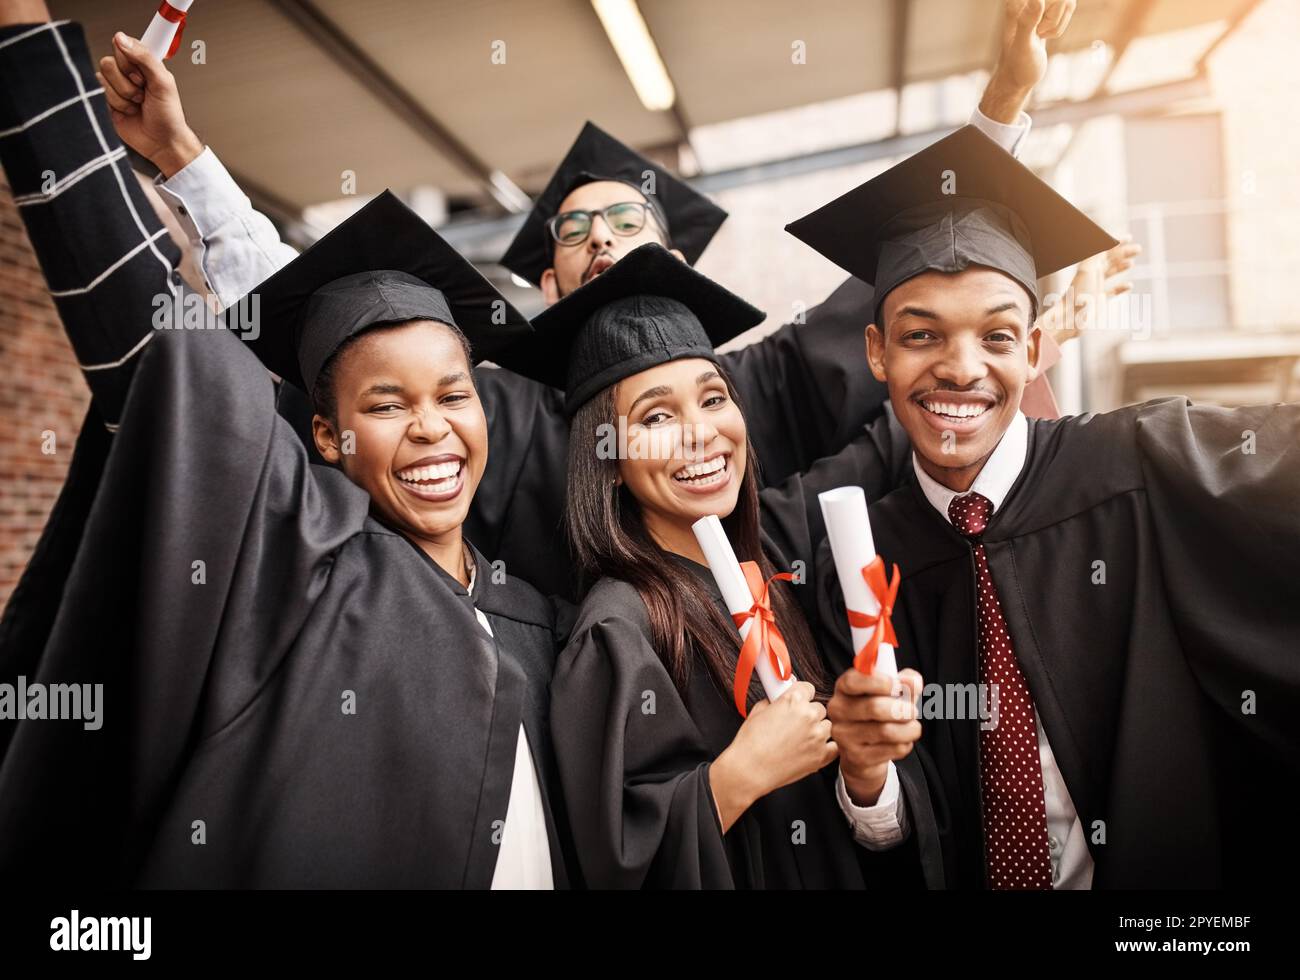 Sie sind stolz darauf, ihren Abschluss zu machen. Studierende am Tag des Universitätsabschlusses. Stockfoto